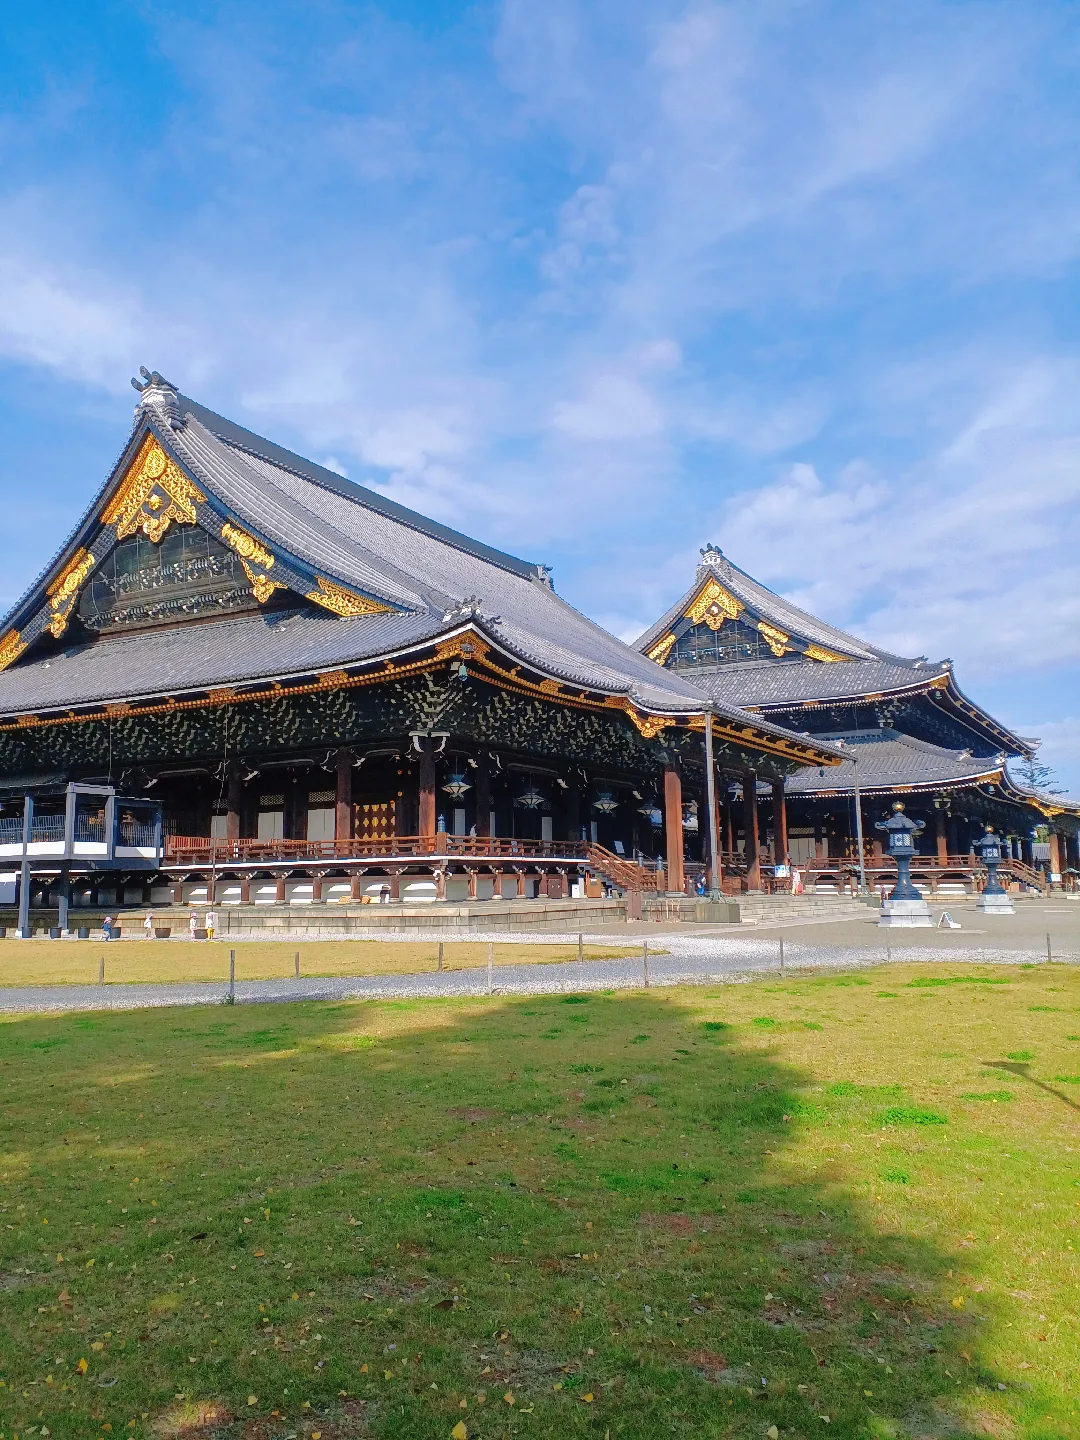 【京都ぶらり】秋晴れの京都から 銀杏の絨毯 東本願寺の画像 (3枚目)